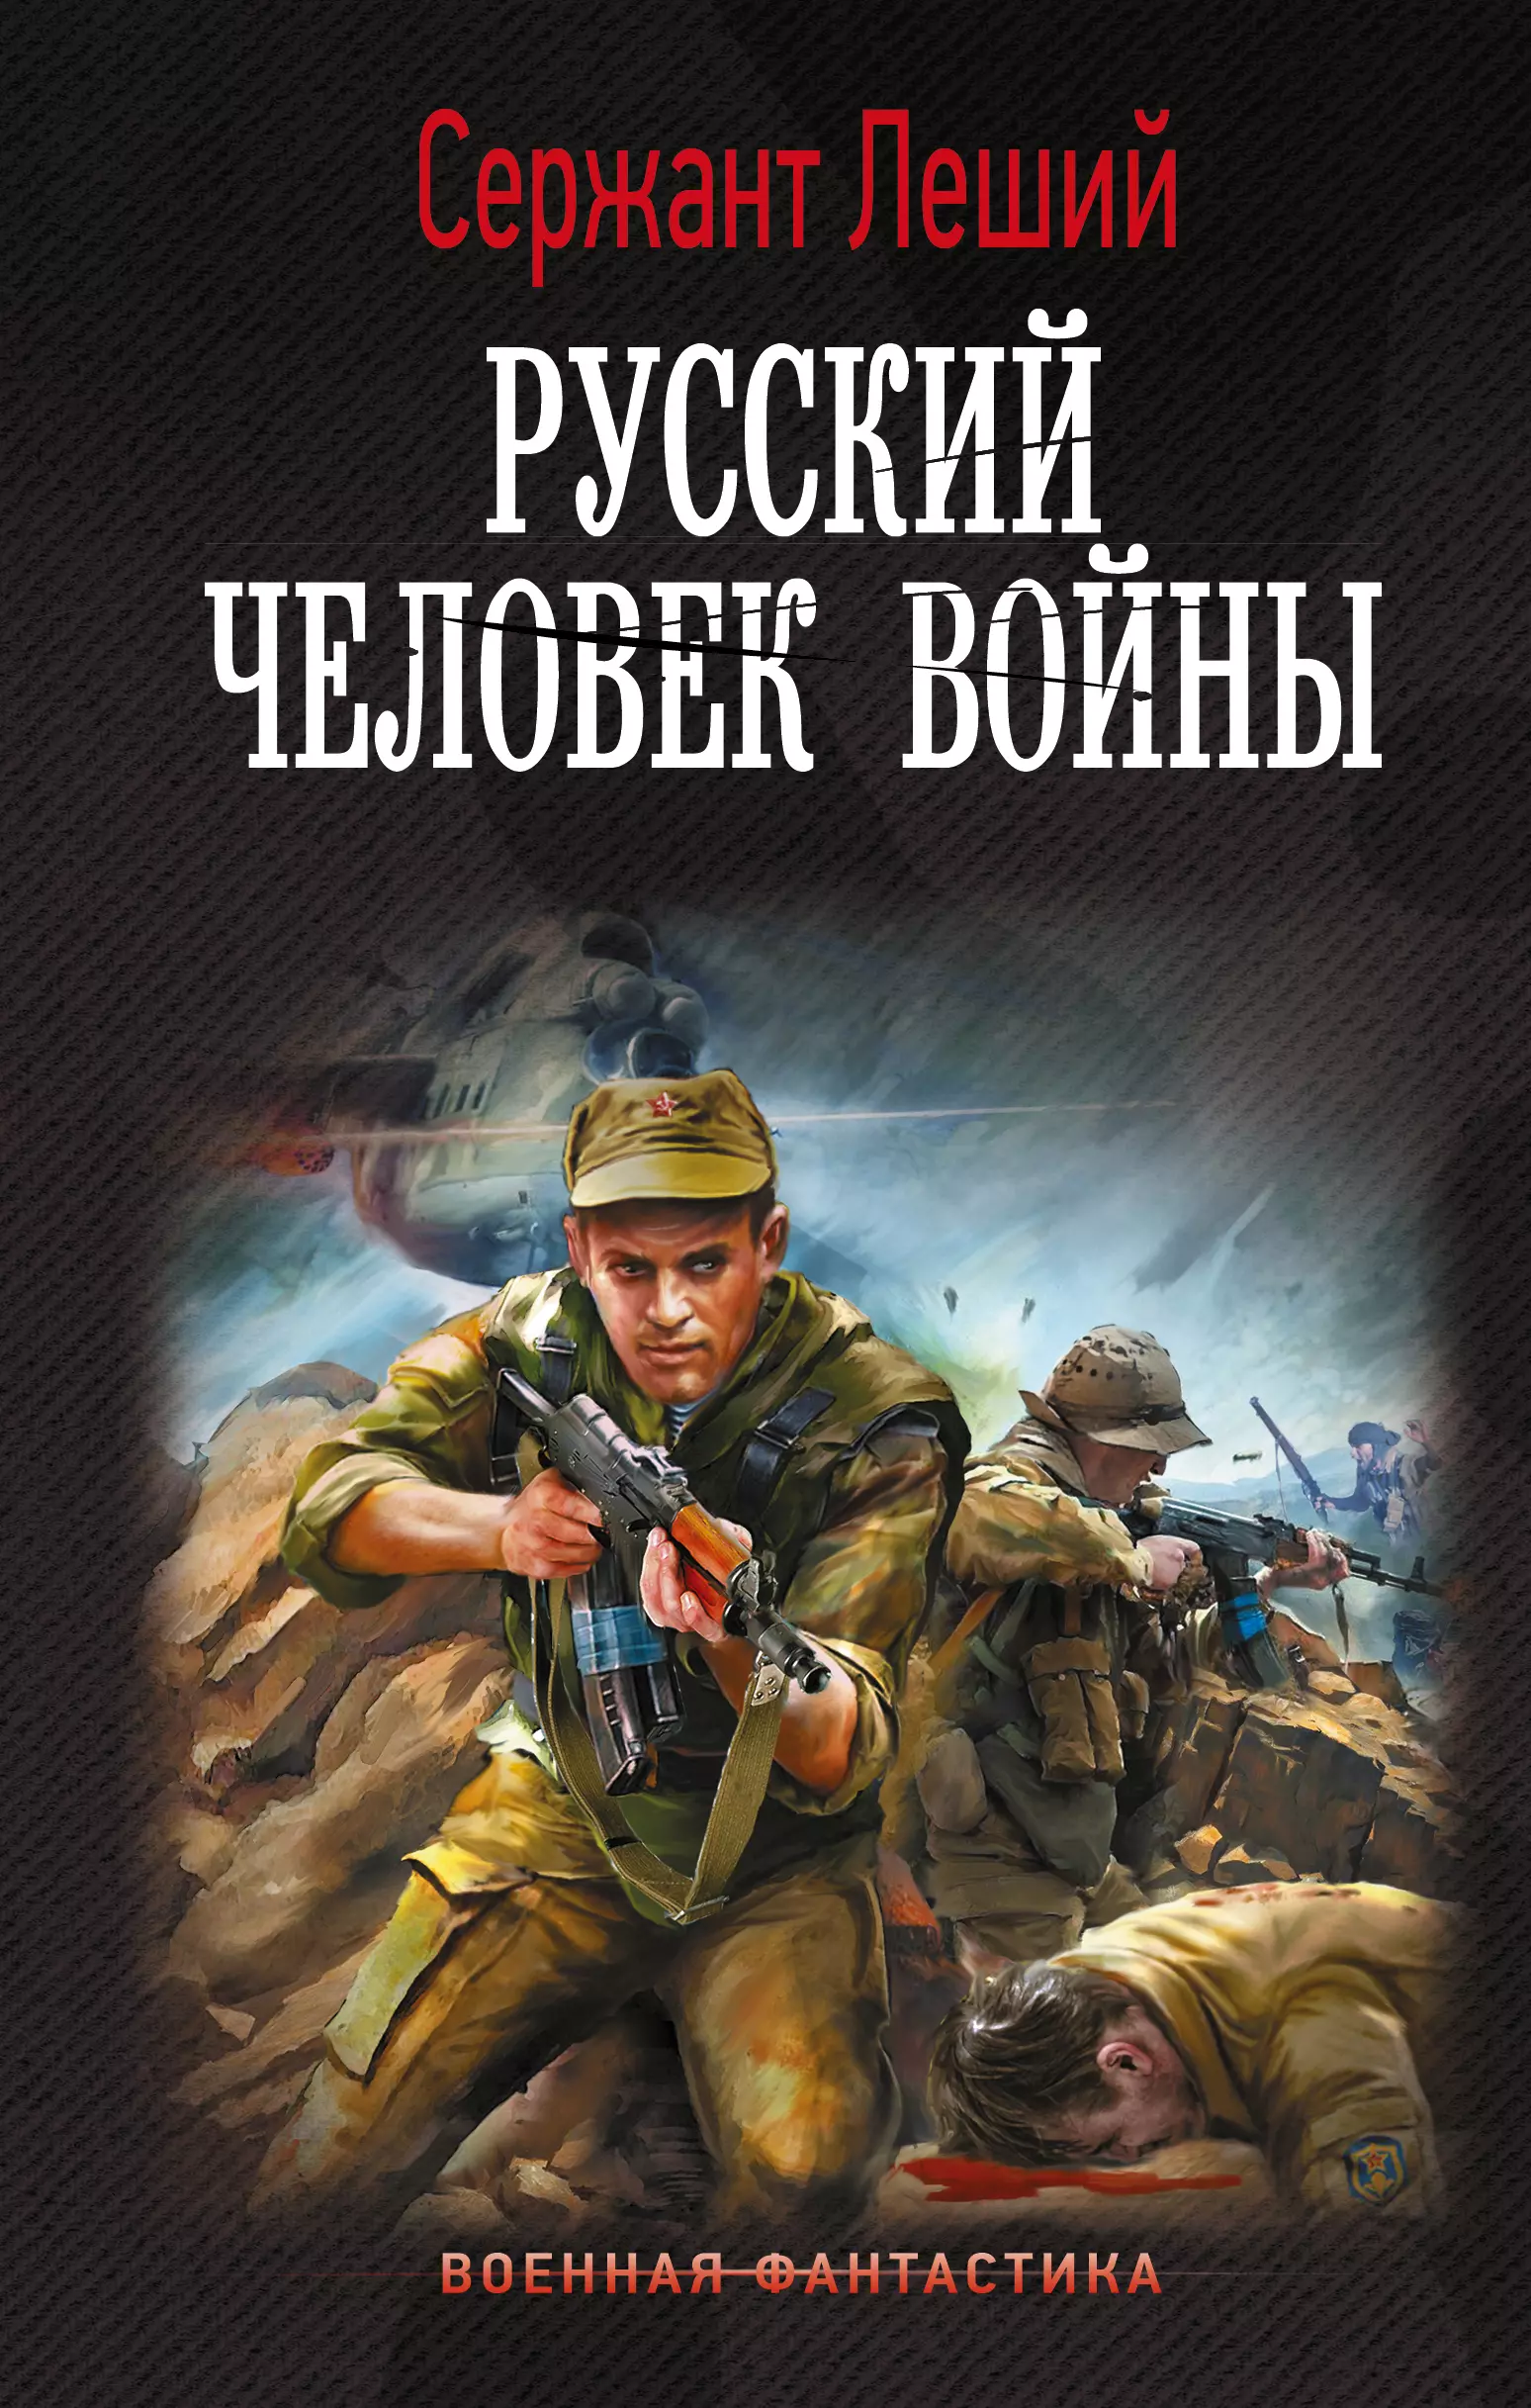 Шмаев Валерий Геннадьевич Русский человек войны: роман